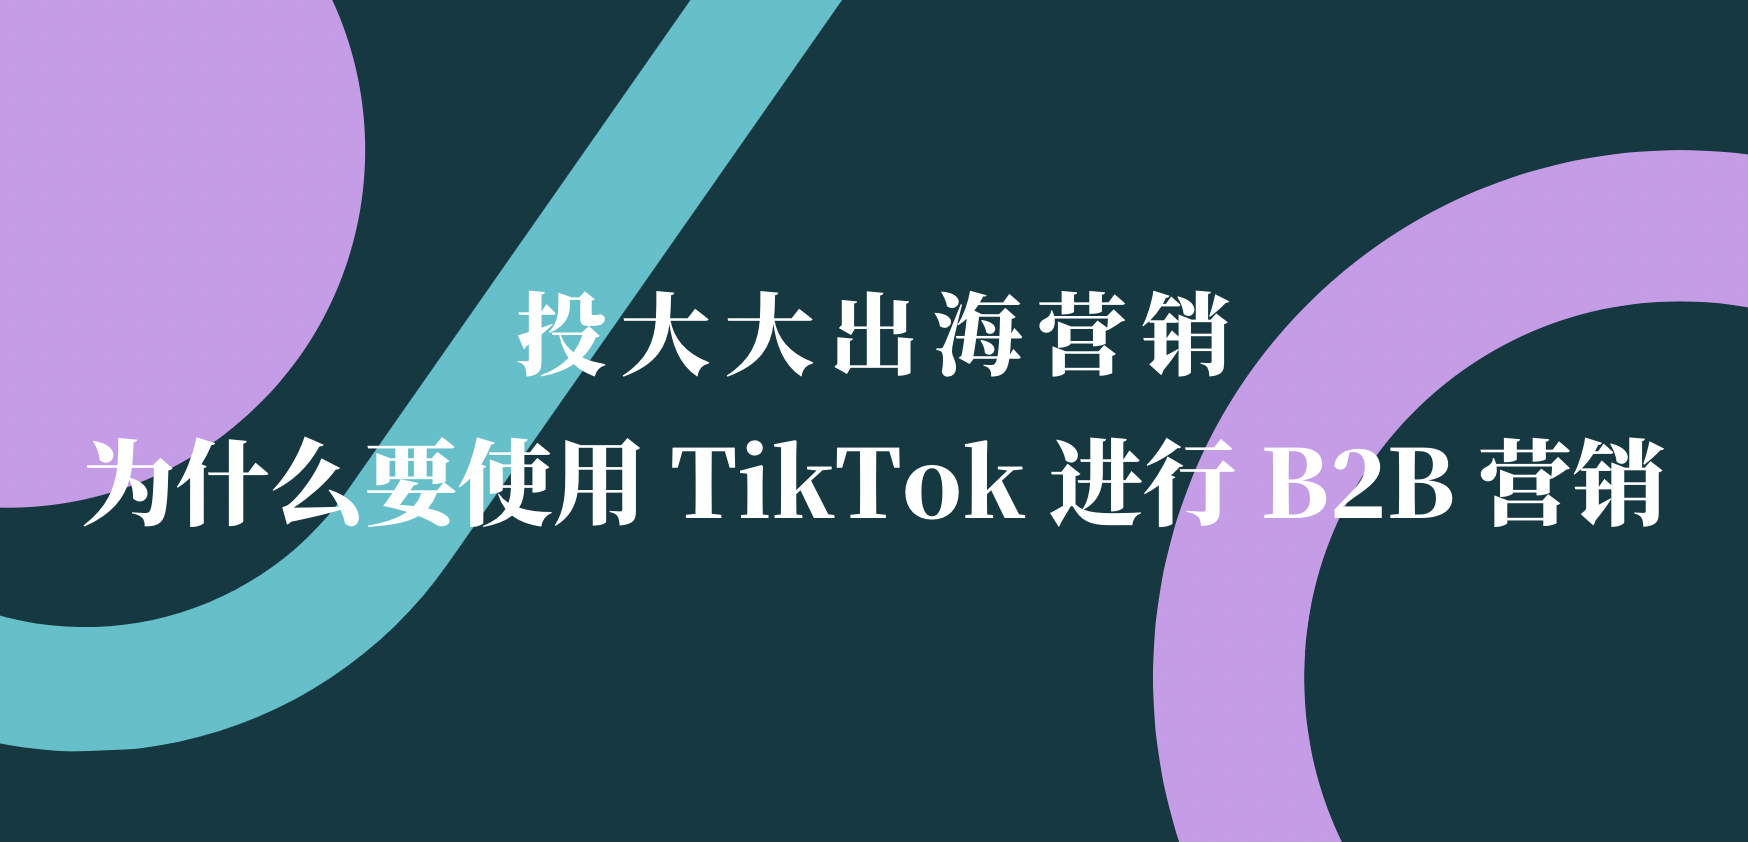 跨境人看过来：为什么要使用 TikTok 进行 B2B 营销